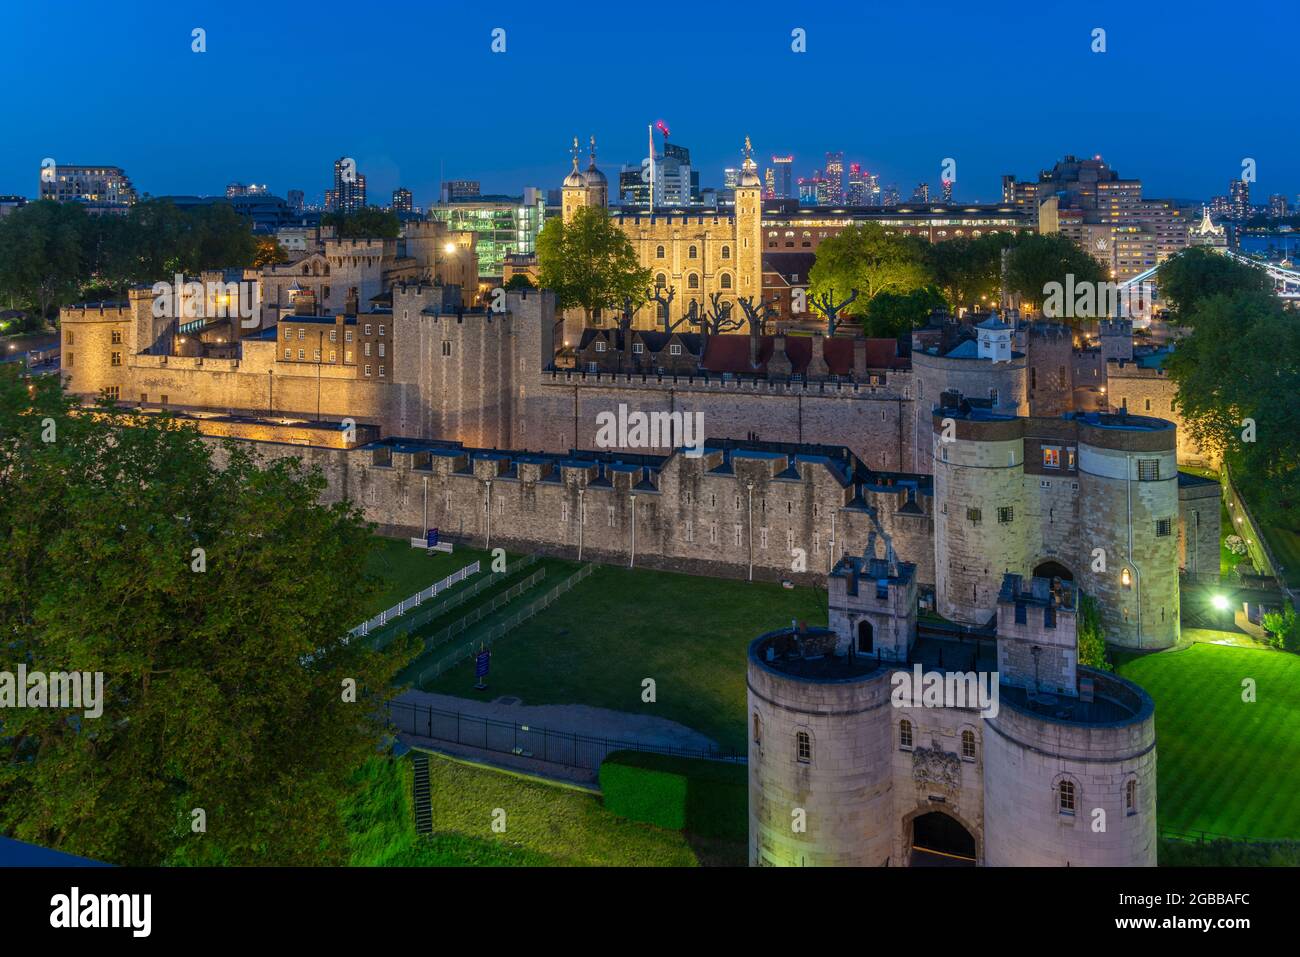 Vue sur la Tour de Londres, site classé au patrimoine mondial de l'UNESCO, de Cheval Three Quays au crépuscule, Londres, Angleterre, Royaume-Uni, Europe Banque D'Images